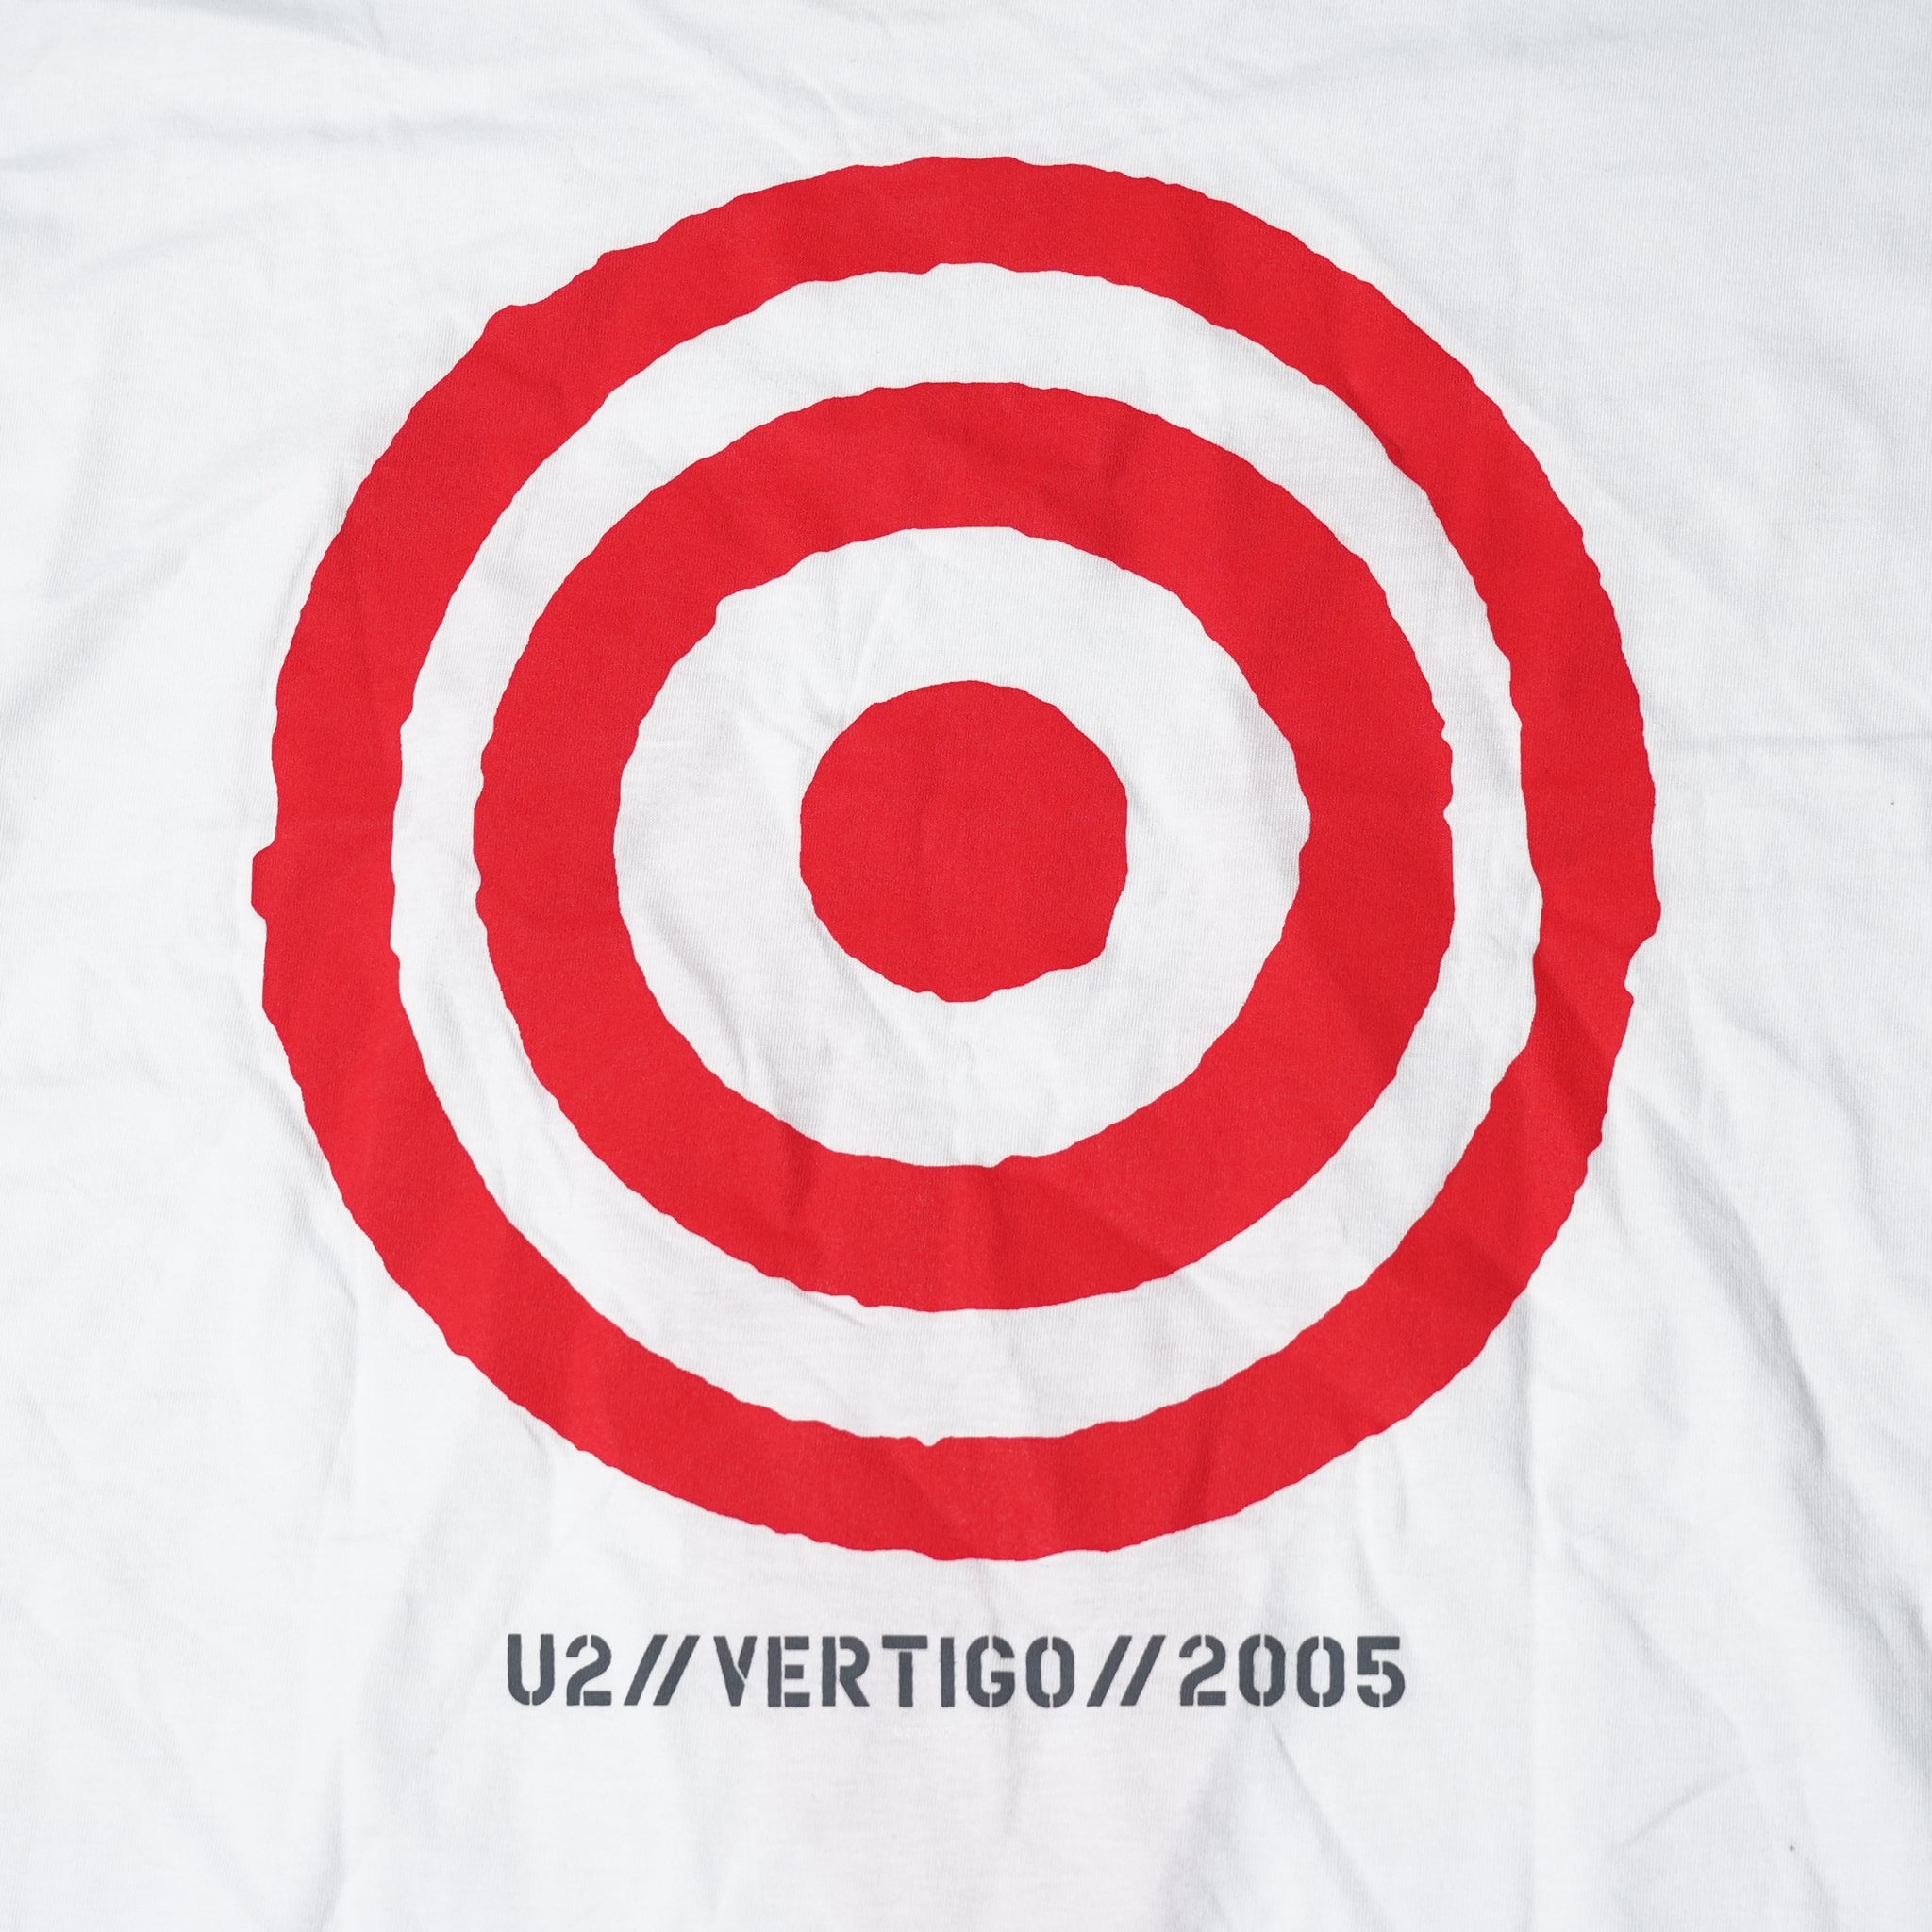 Name:U2_Vertigo Tour 2005 Red V_Unisex_White【ROCK OFF】【ネコポス選択可能】